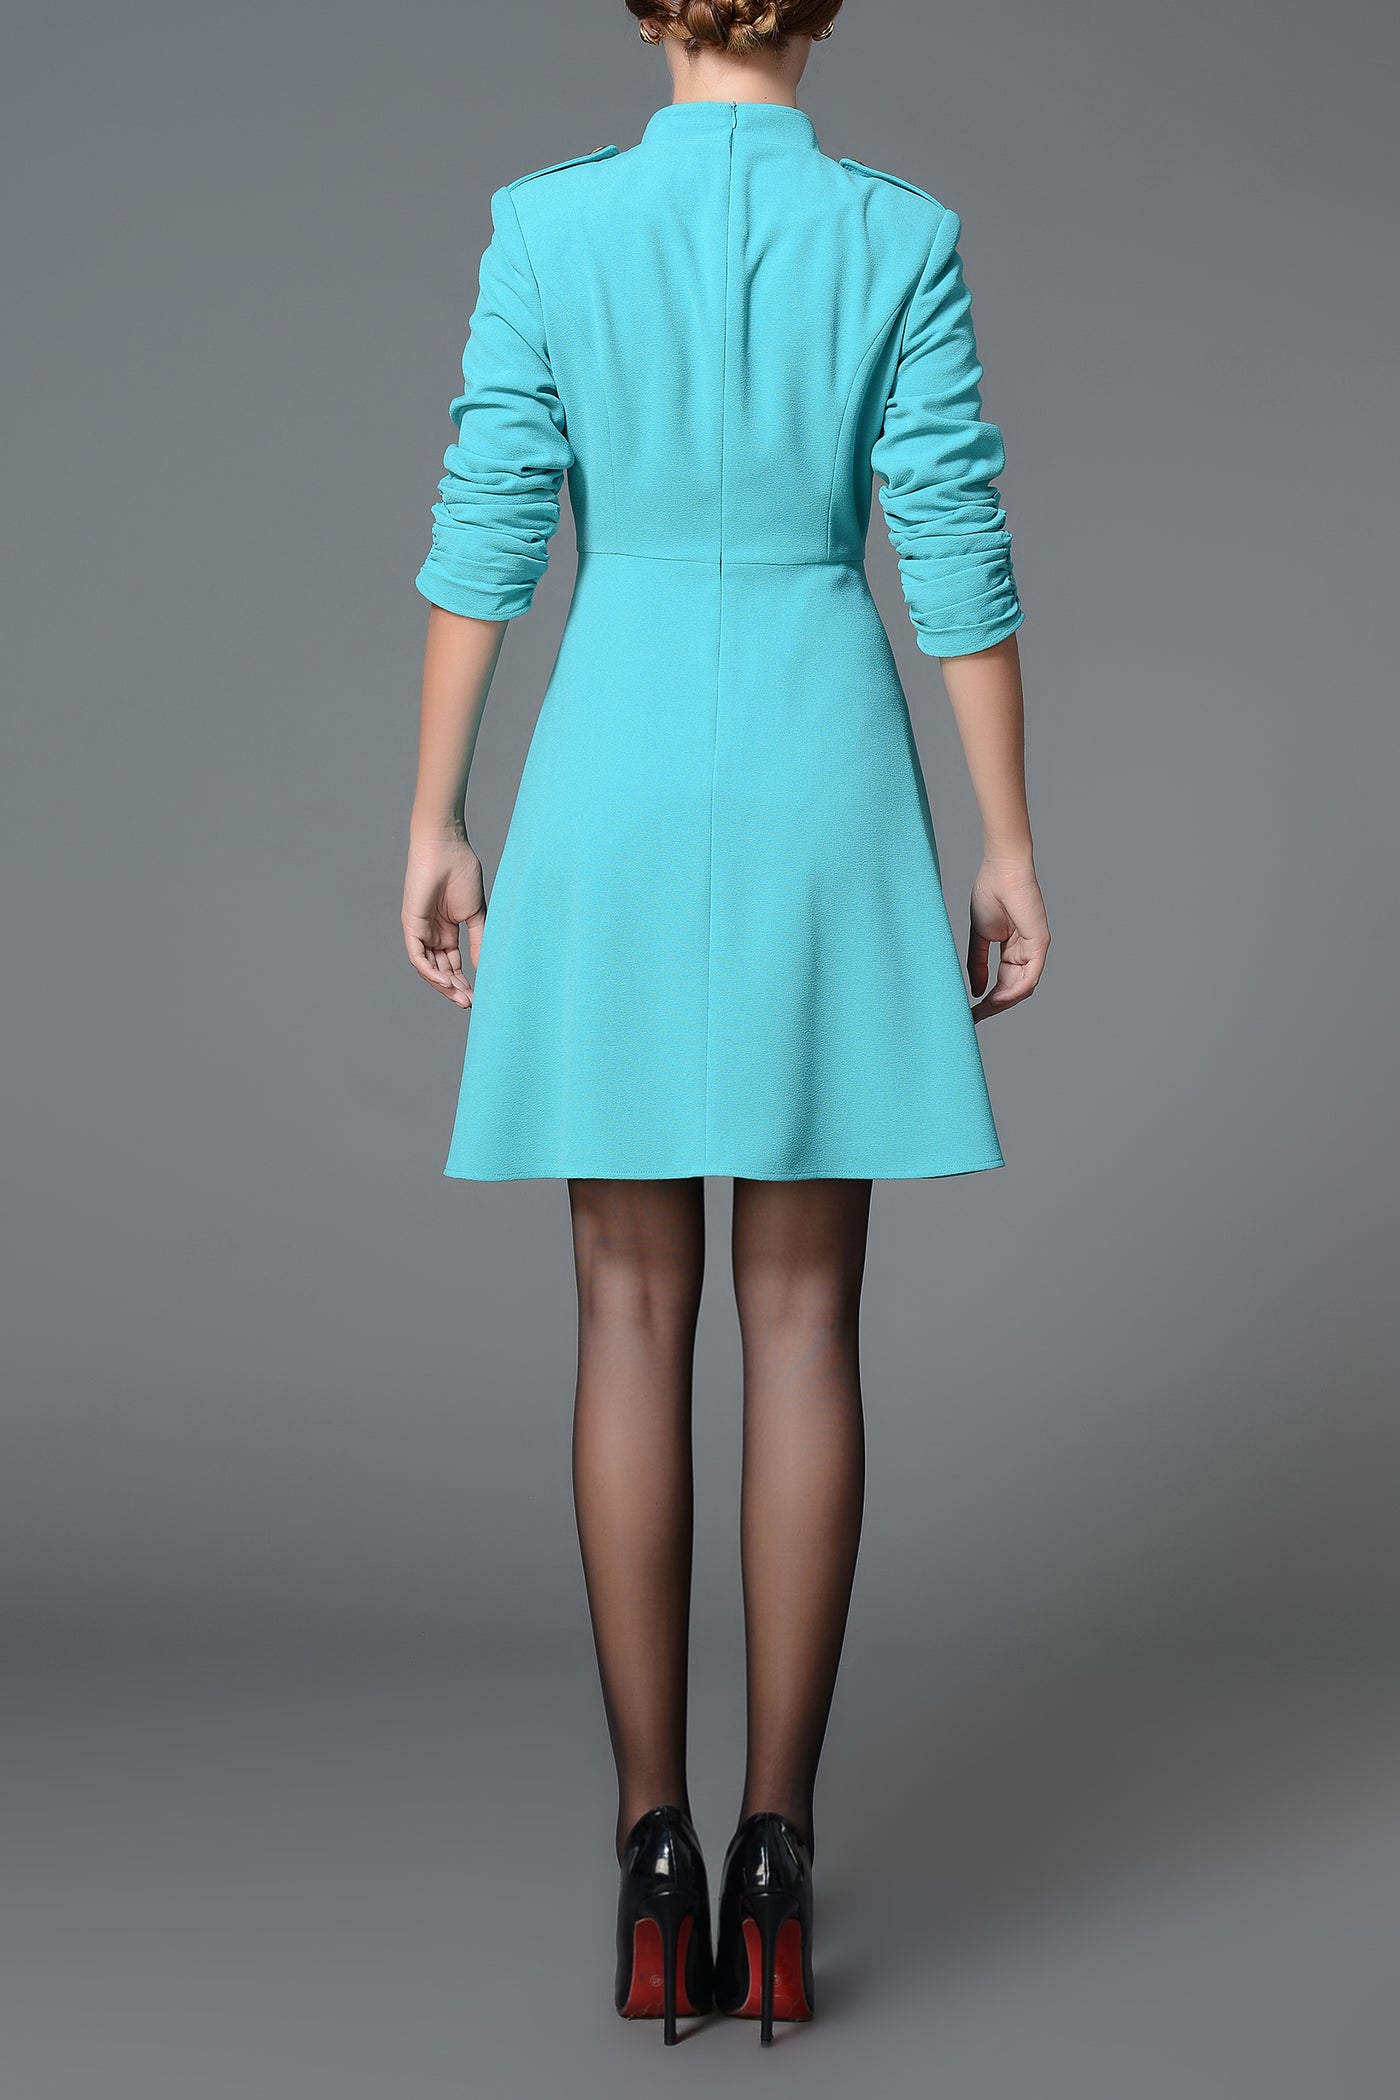 Tiffany Blue double-breasted Lana Dress